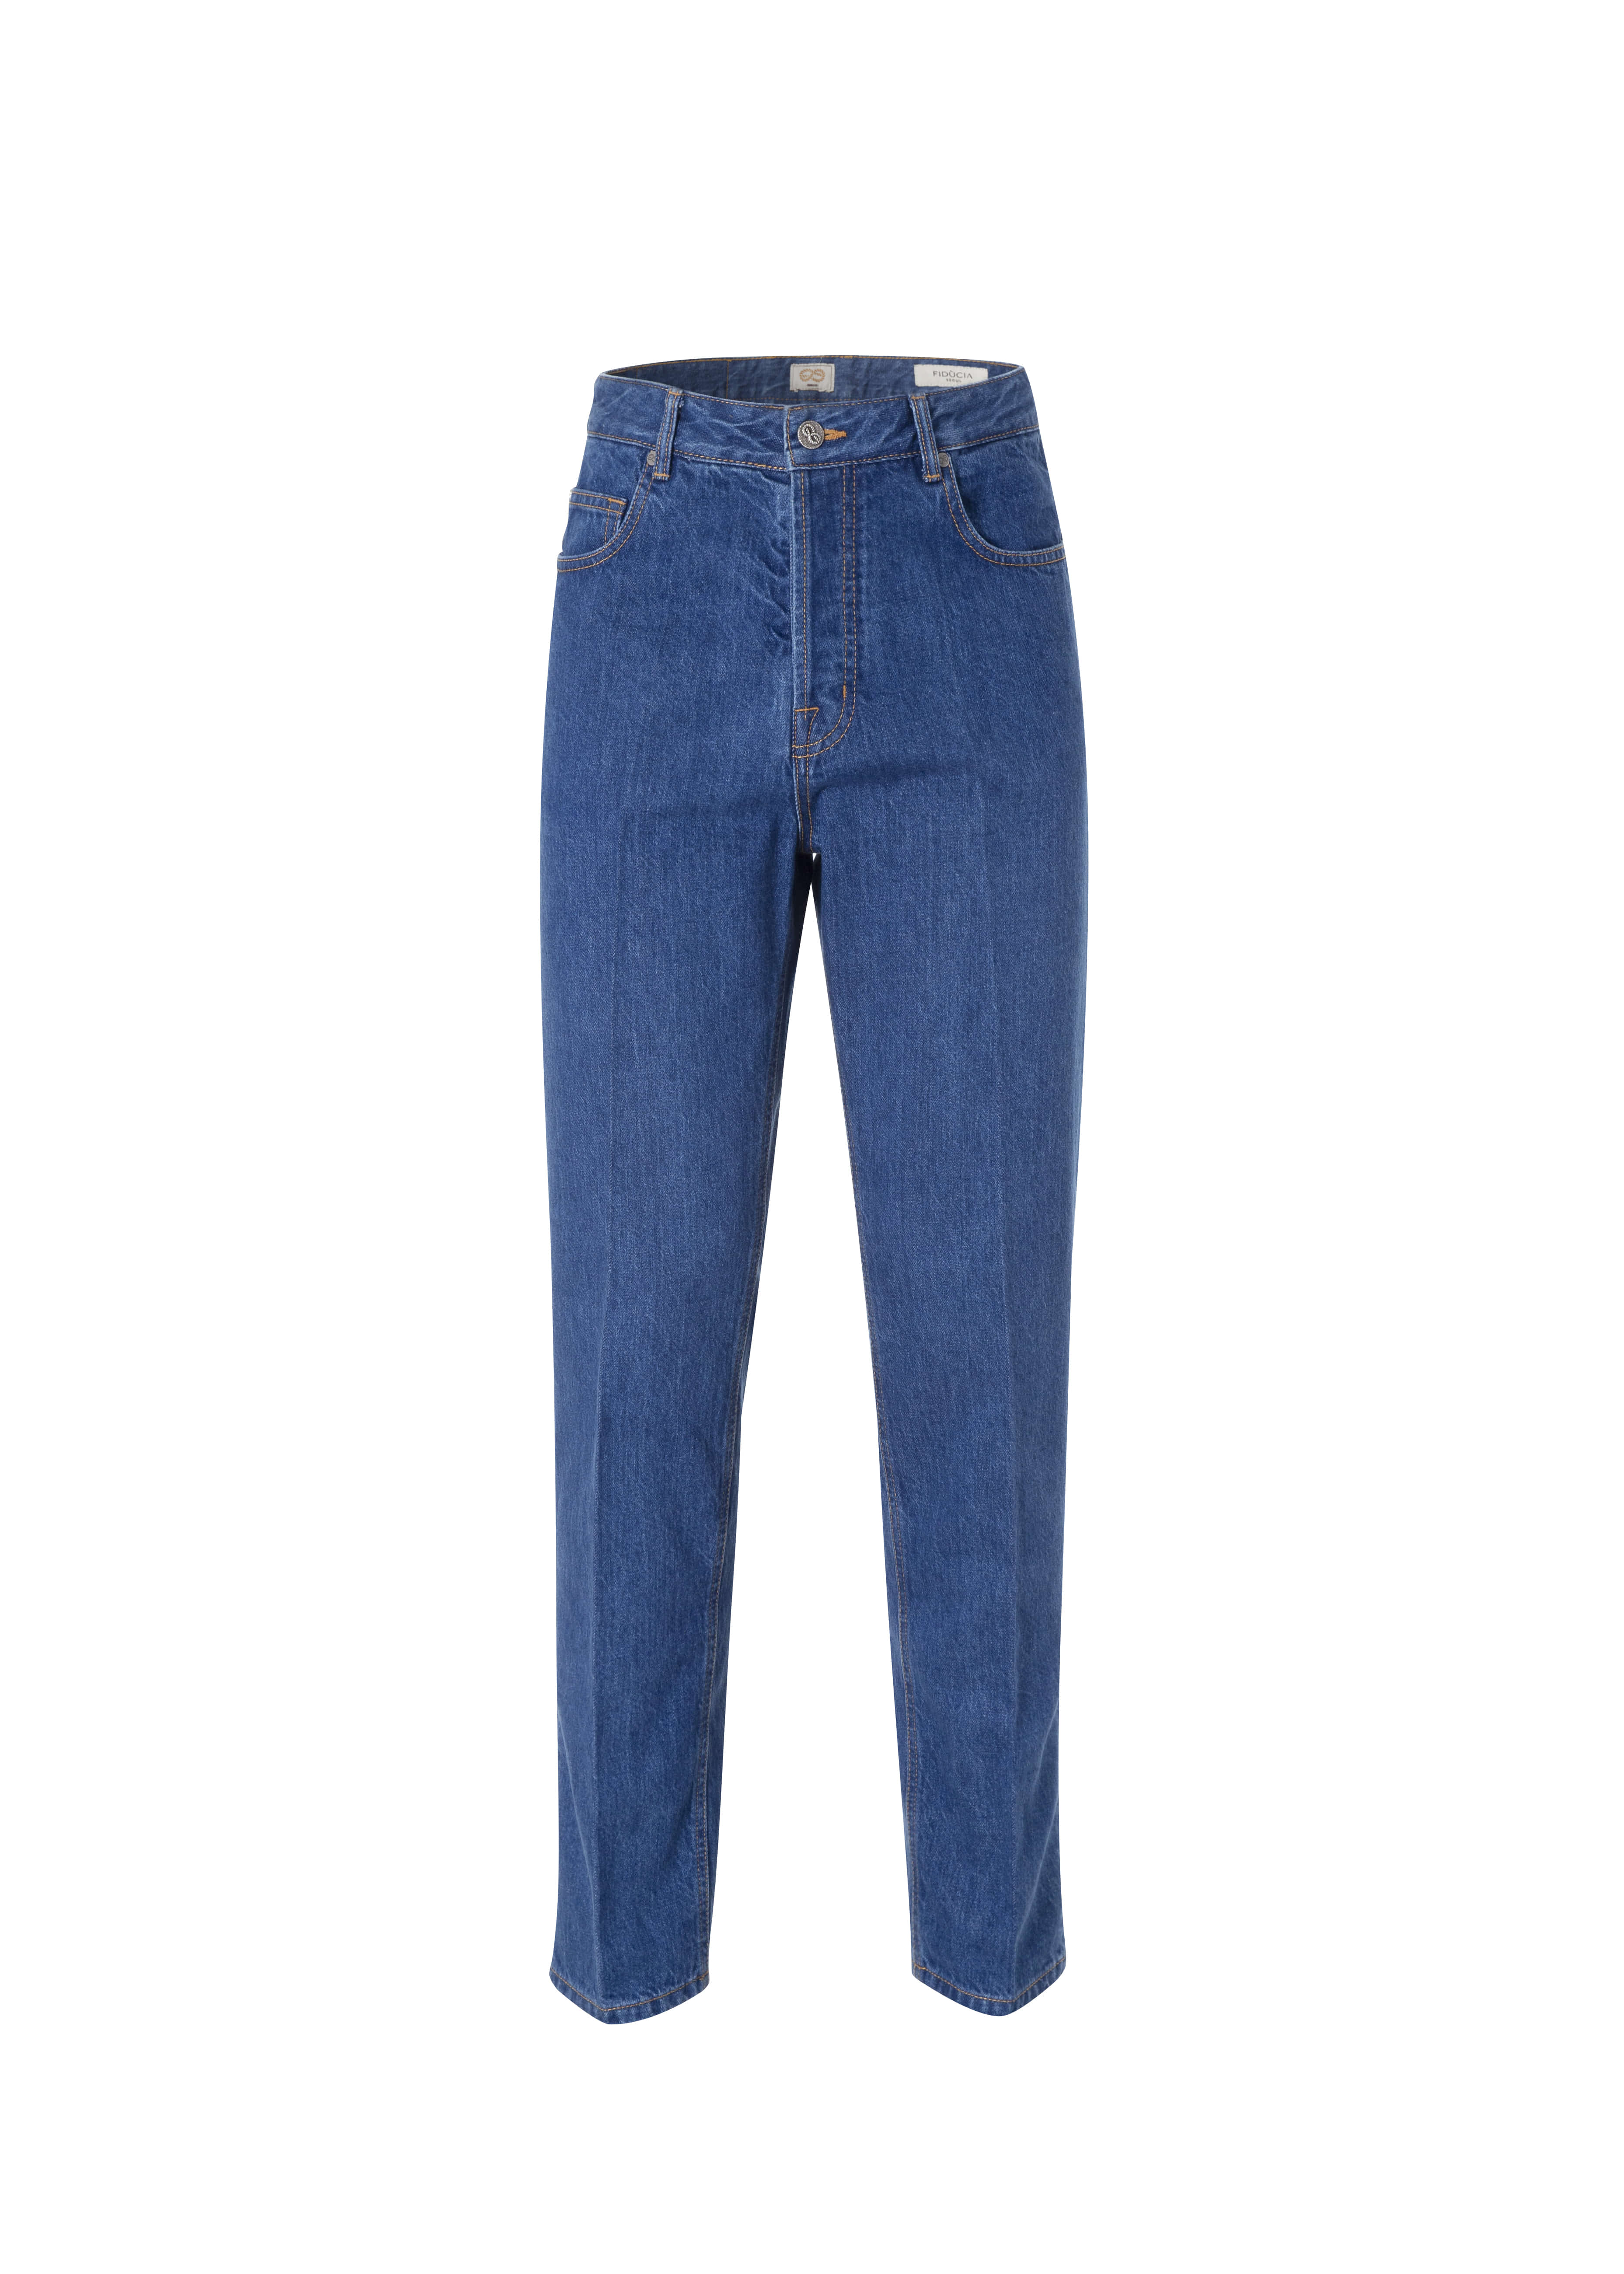 [FIDUCIA] Ombelico classic blue jean